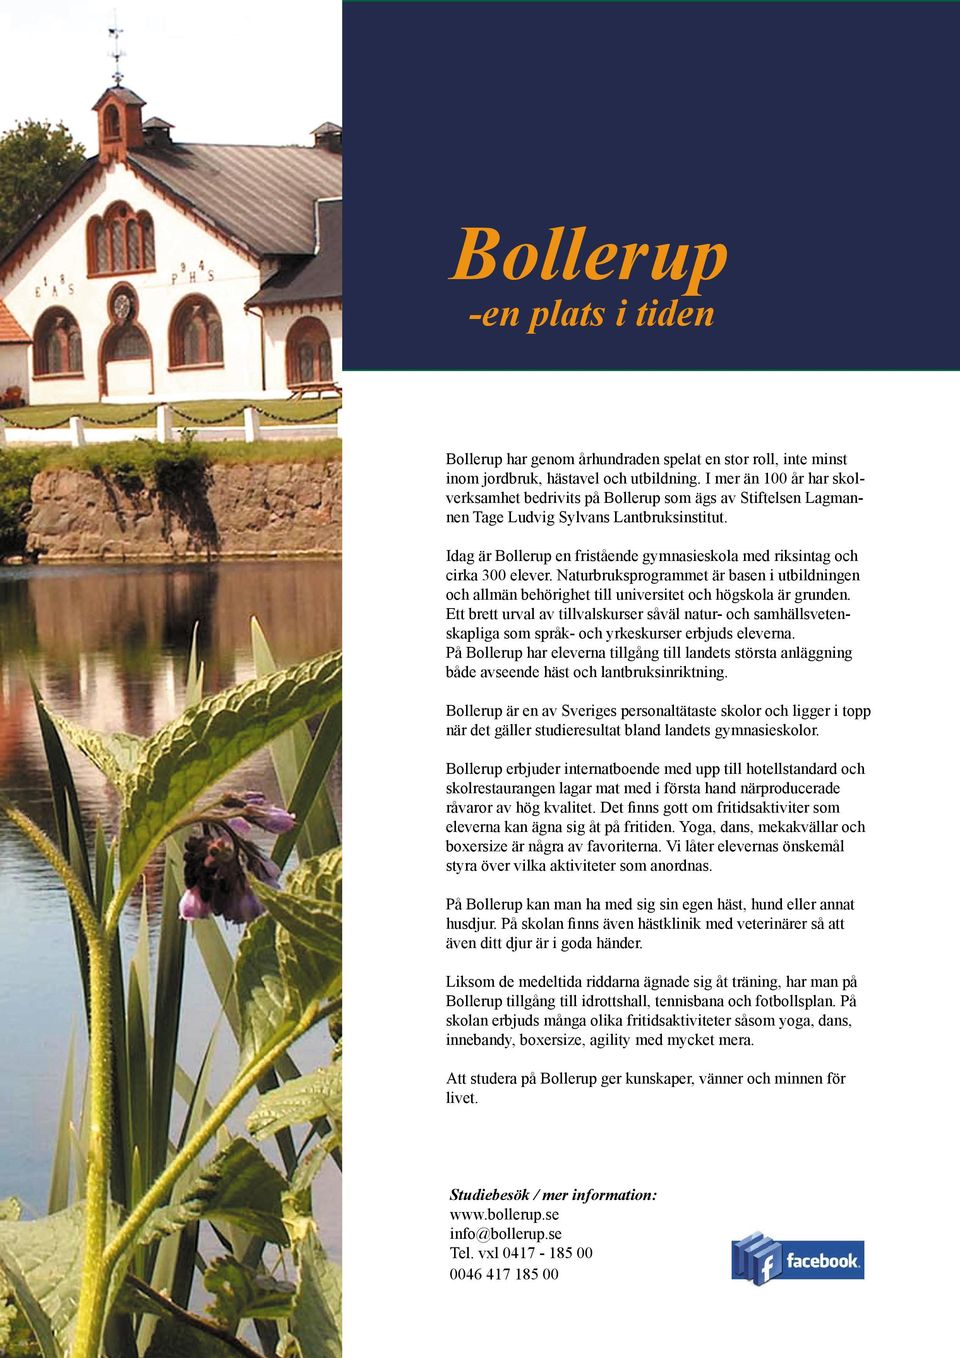 Idag är Bollerup en fristående gymnasieskola med riksintag och cirka 300 elever. Naturbruksprogrammet är basen i utbildningen och allmän behörighet till universitet och högskola är grunden.